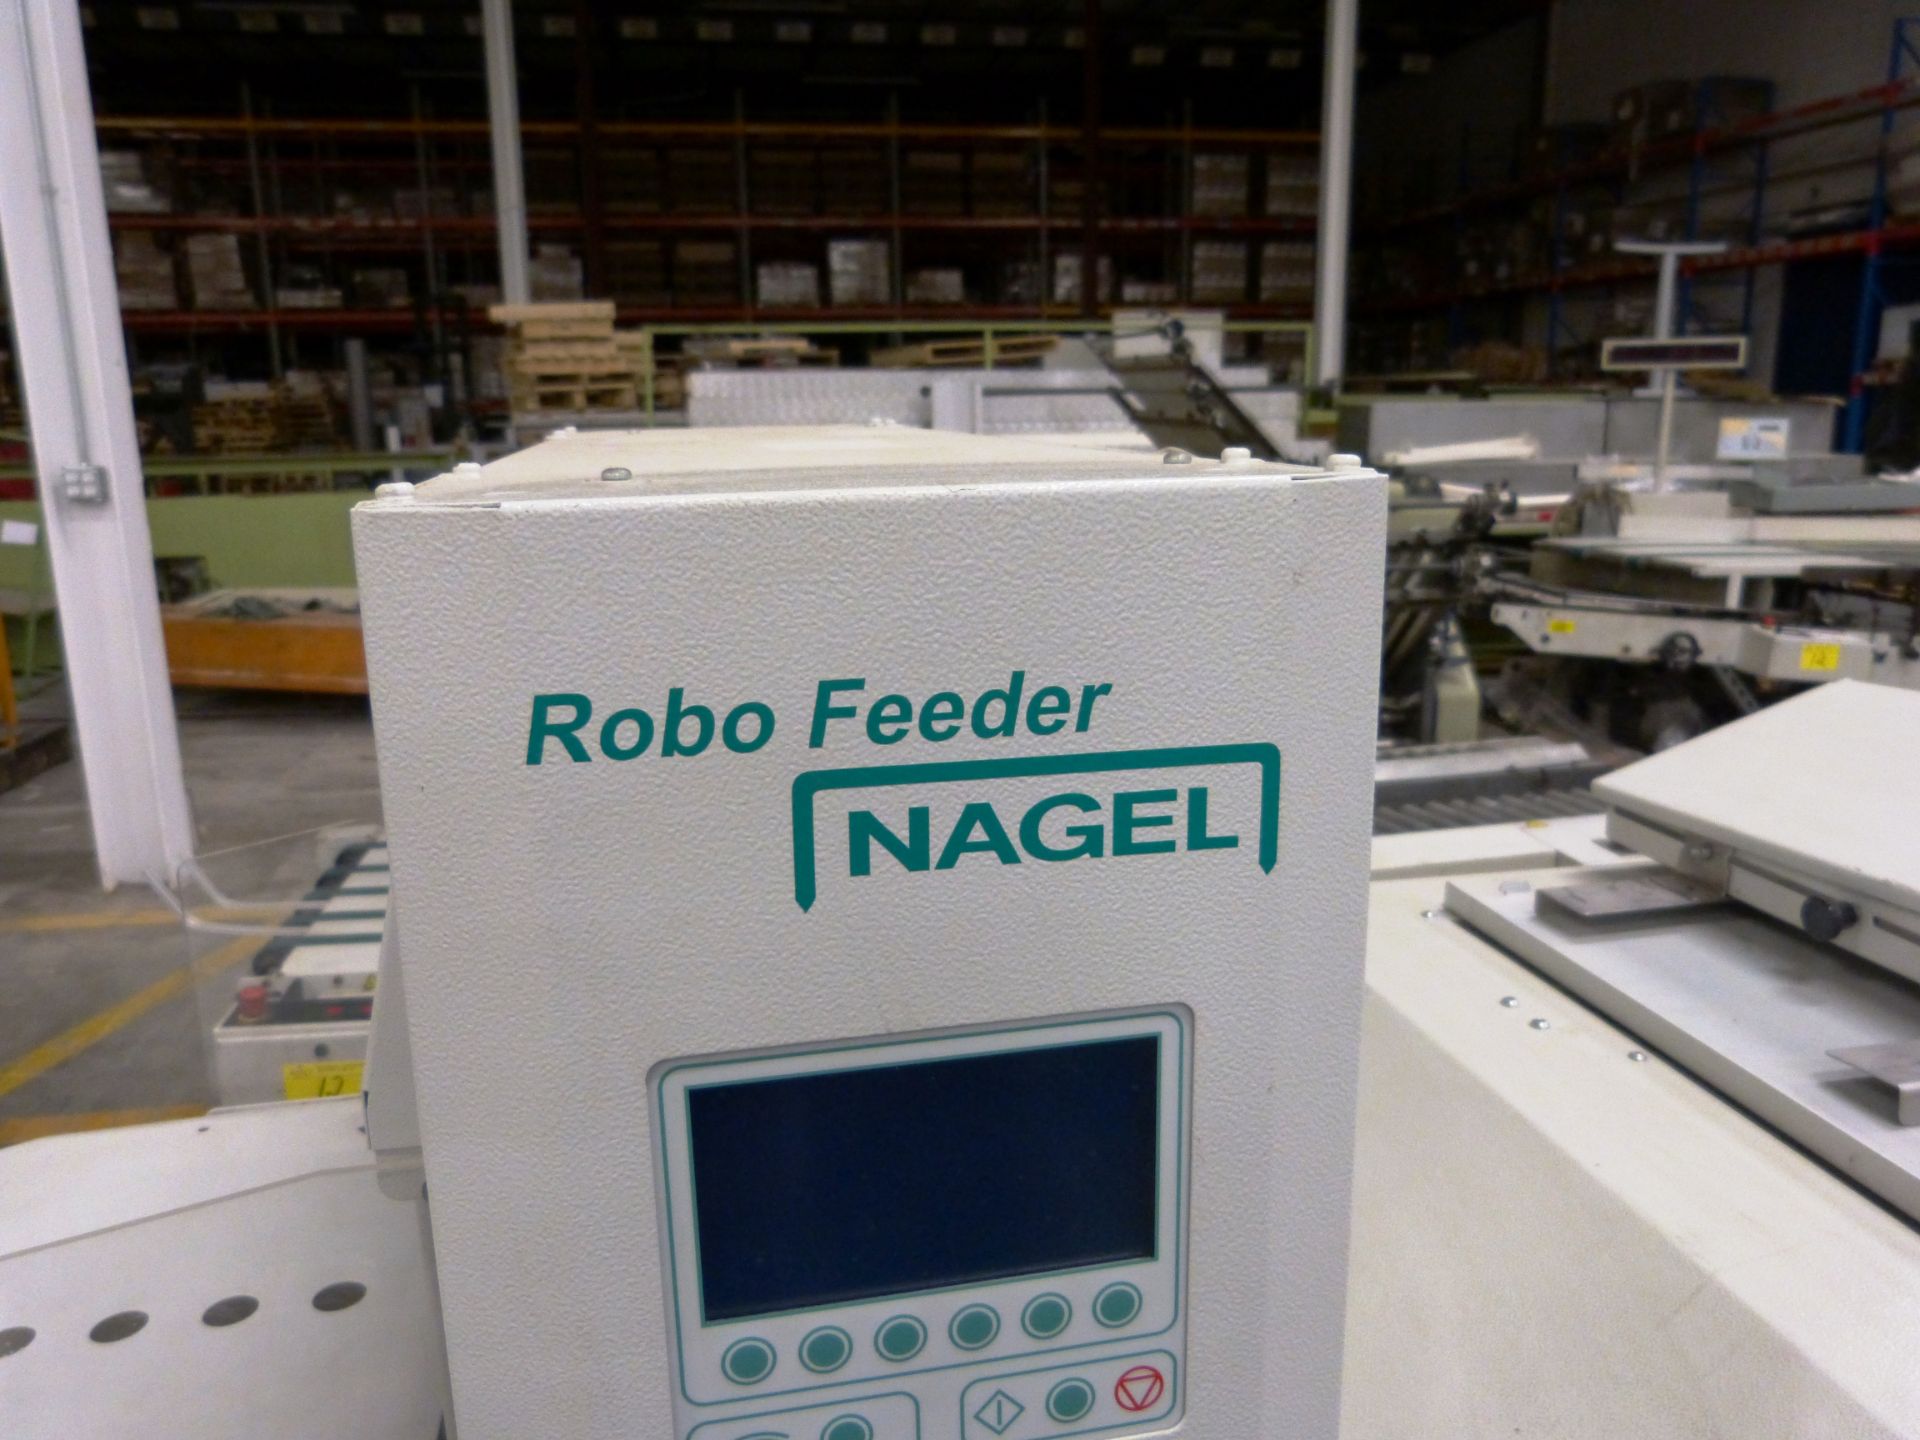 NAGEL Booklet Maker w/Model "Stander S8/2" Feeder", "FK-100 Folder" & "Trimmer 100" - Image 2 of 9